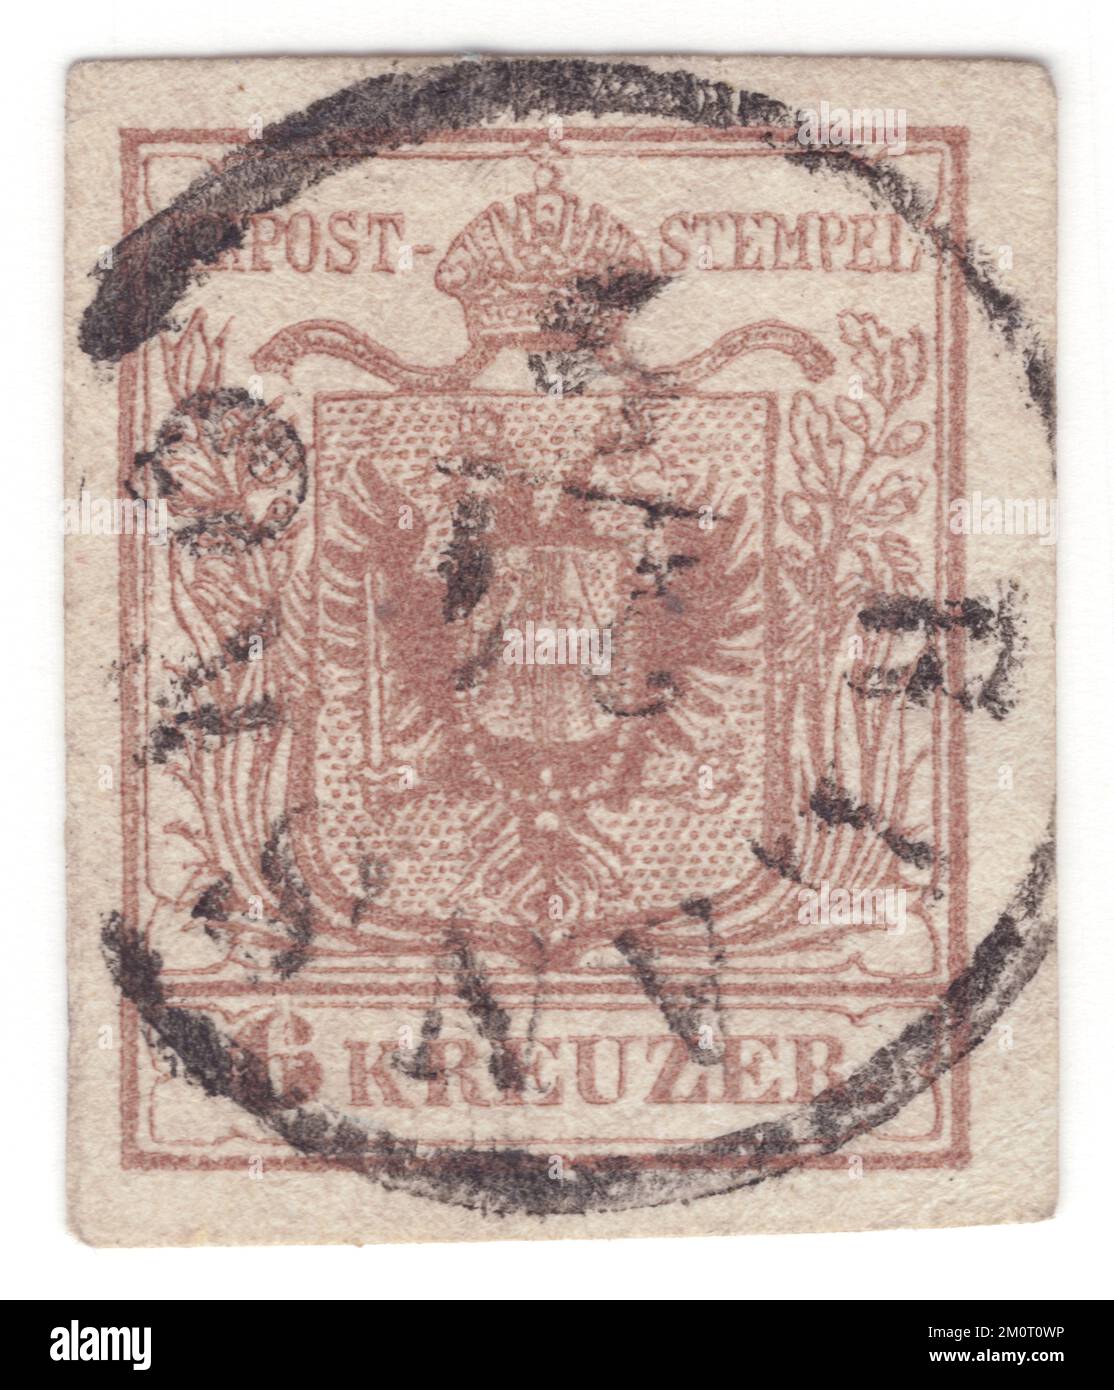 ÖSTERREICH — 1850. Juni 1: Ein brauner 6-Kreuzer-Briefstempel mit dem Wappen der österreichischen Monarchie. Die erste Ausgabe der österreichischen Monarchie (einschließlich Ungarn) Briefmarken. Die erste Briefmarkenausgabe des Reiches von Österreich war eine Reihe imperforierter, typografierter Briefmarken mit dem Wappen. Zuerst wurden sie auf grobes, handgefertigtes Papier gedruckt, aber nach 1854 wurde stattdessen glattes, maschinengefertigtes Papier verwendet. Die Briefmarken des Österreichischen Reiches wurden erstmals am 1. Juni 1850 ausgestellt: Ein Wappen unter dem Text KK Post-Stempel Stockfoto